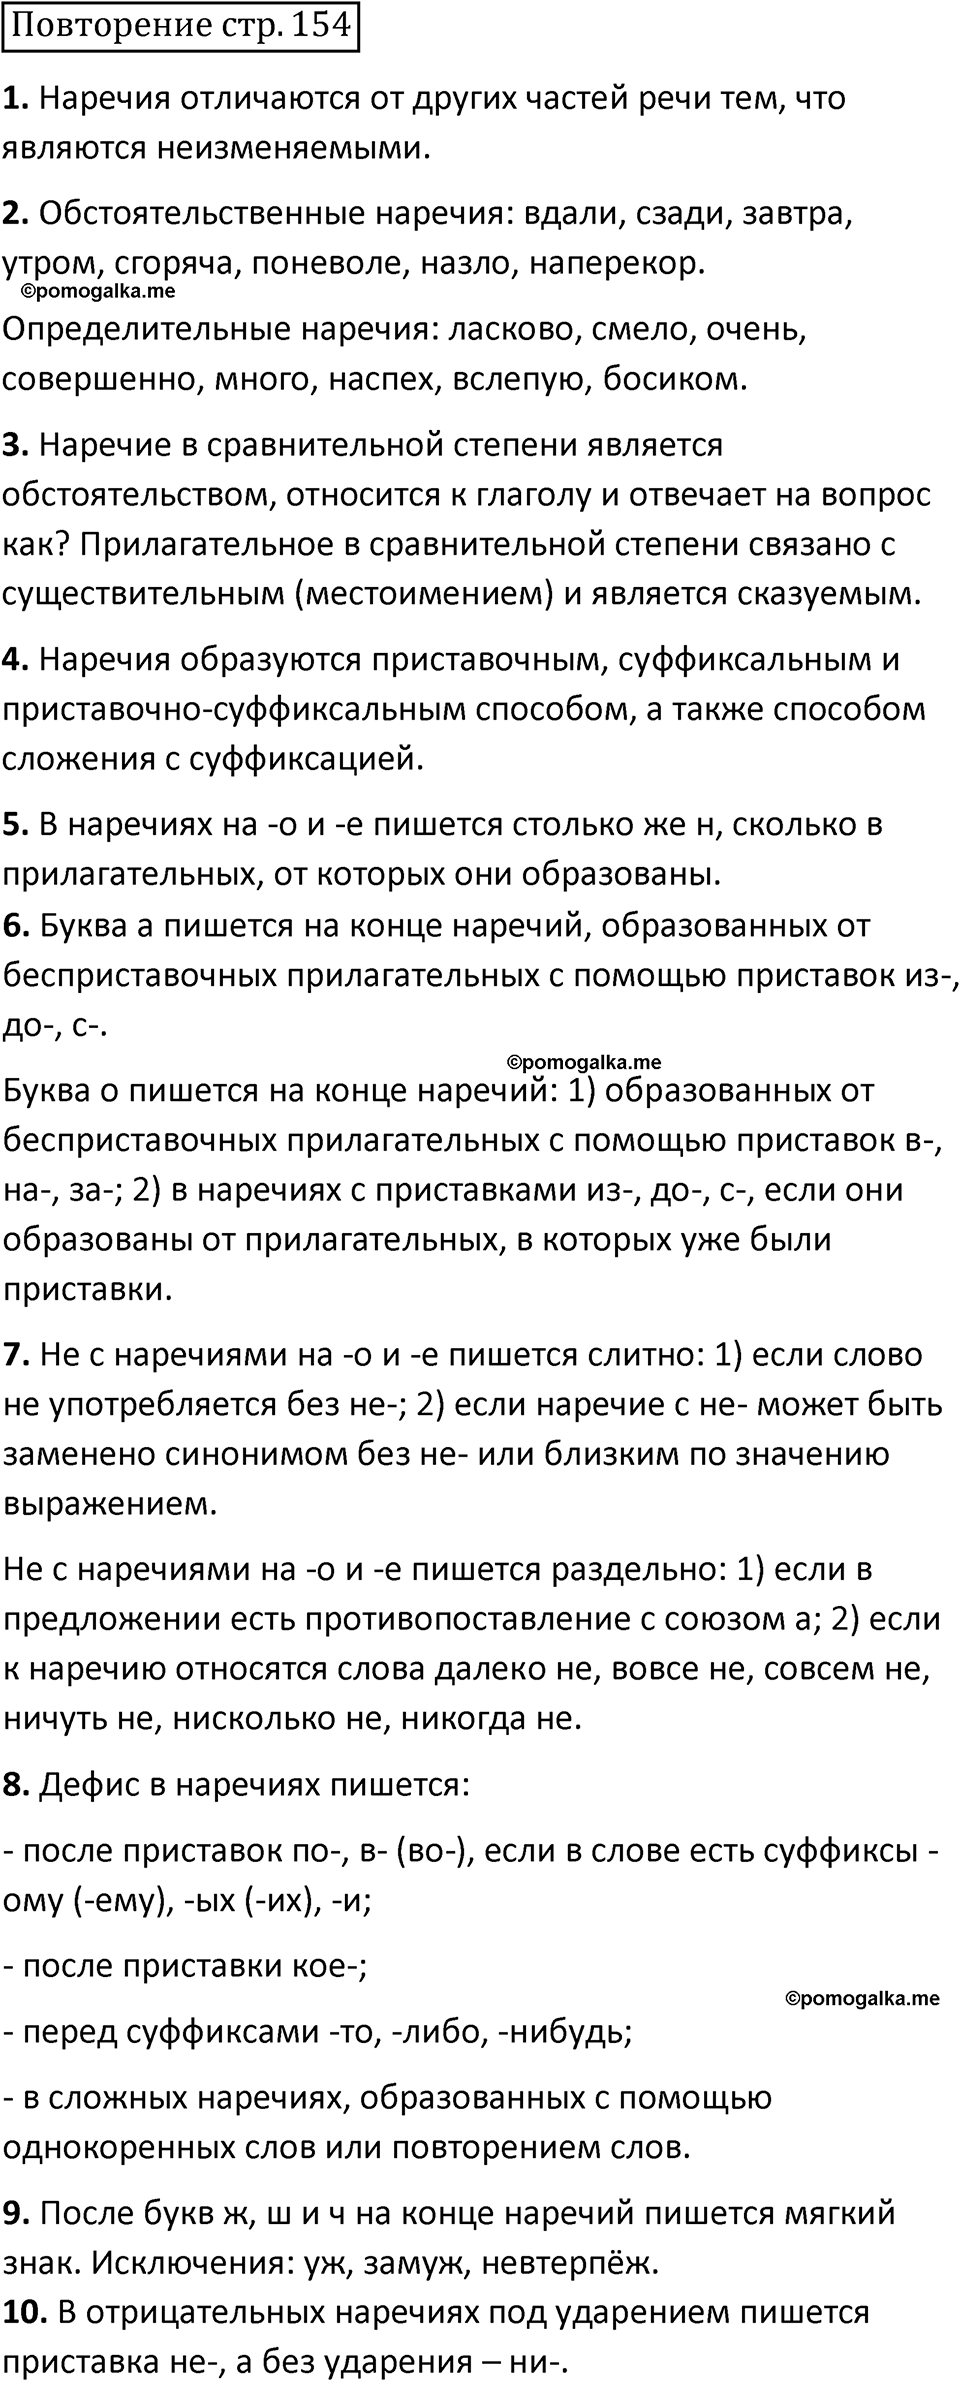 страница 154 повторение русский язык 7 класс Баранов, Ладыженская 2021-2022 год